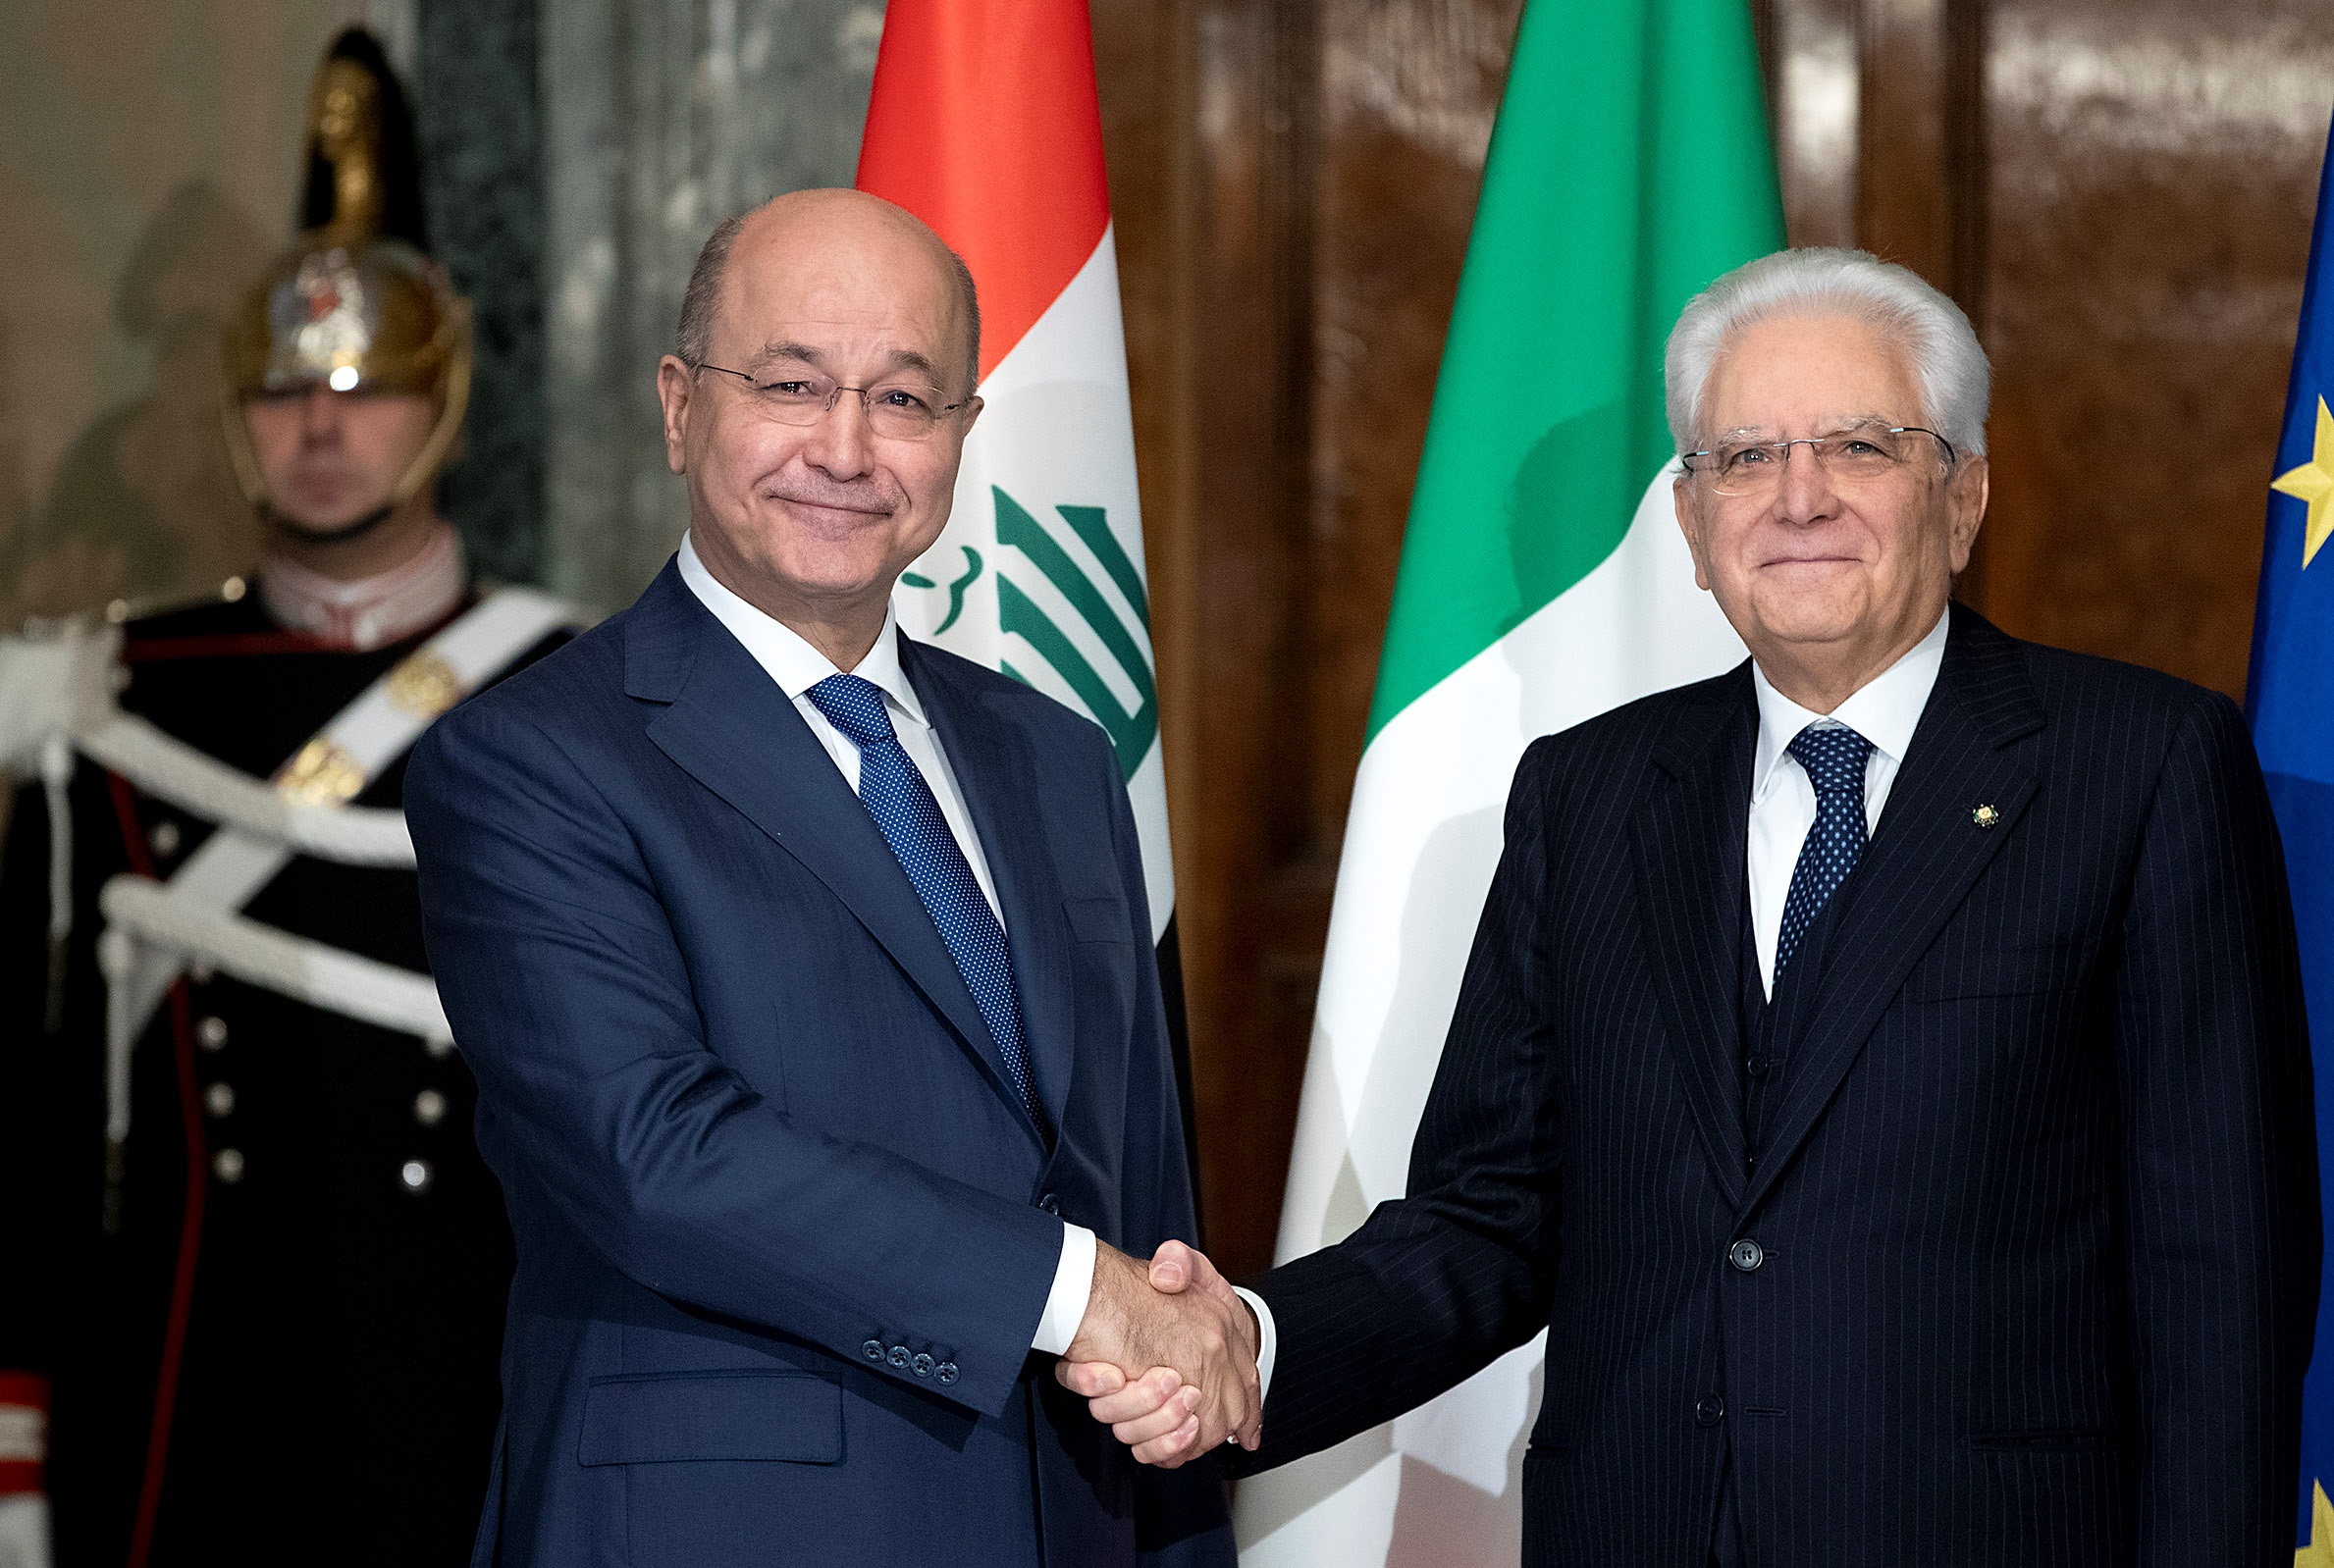 الرئيس الايطالي سيرجو ماتاريللا يلتقي الرئيس العراقي برهم صالح